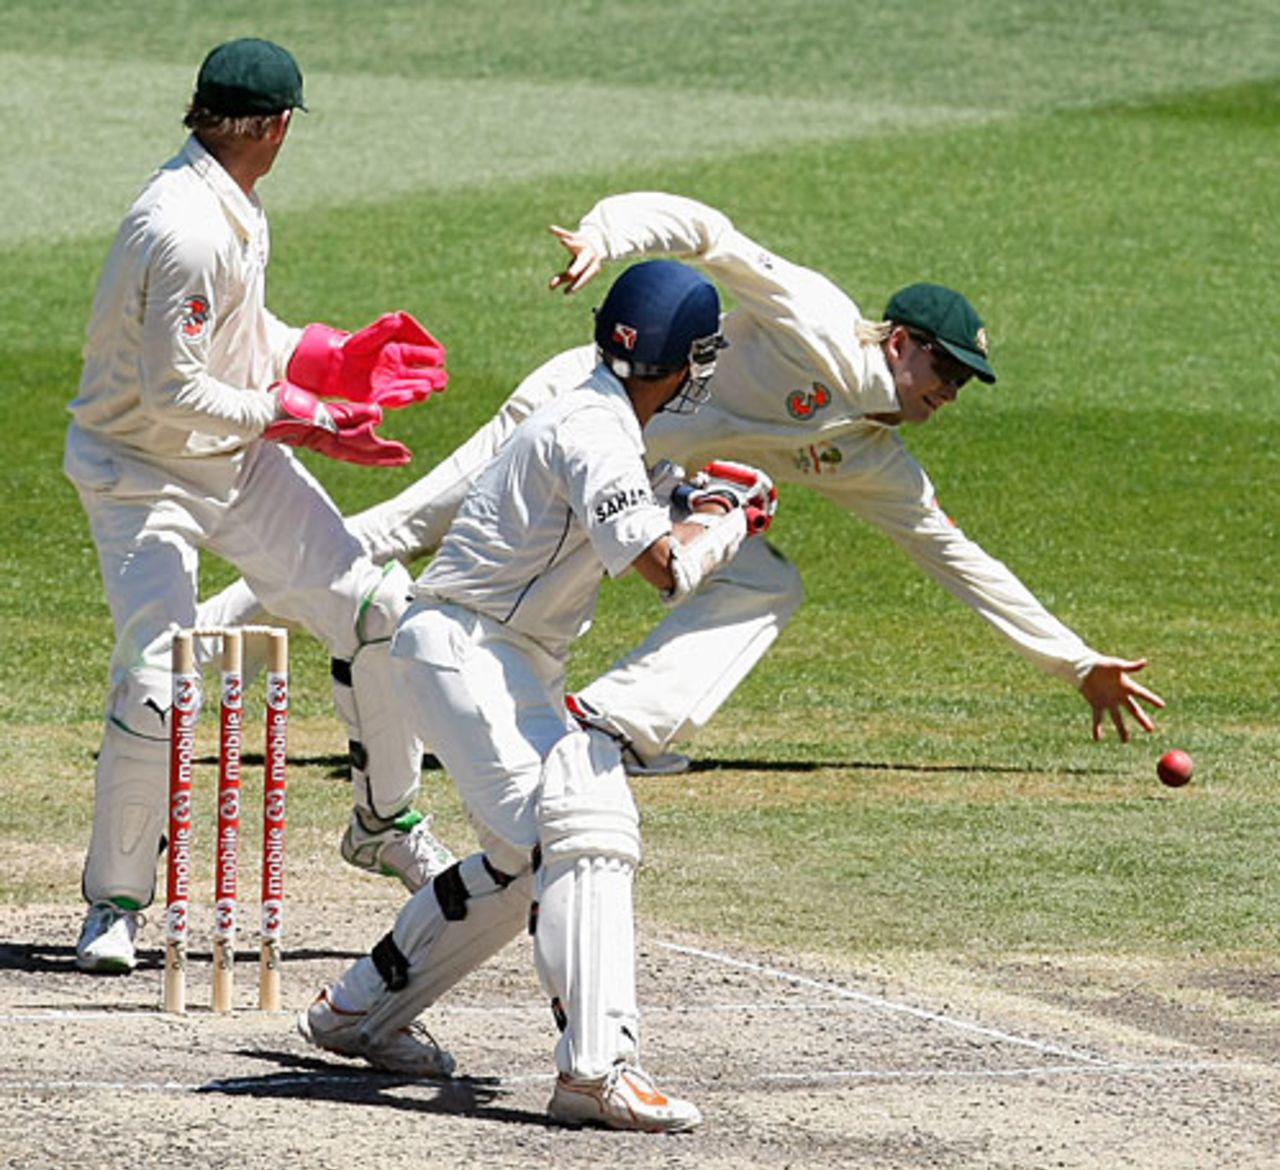 Sourav Ganguly edges past Michael Clarke at slip, Australia v India, 1st Test, Melbourne, 4th day, December 29, 2007